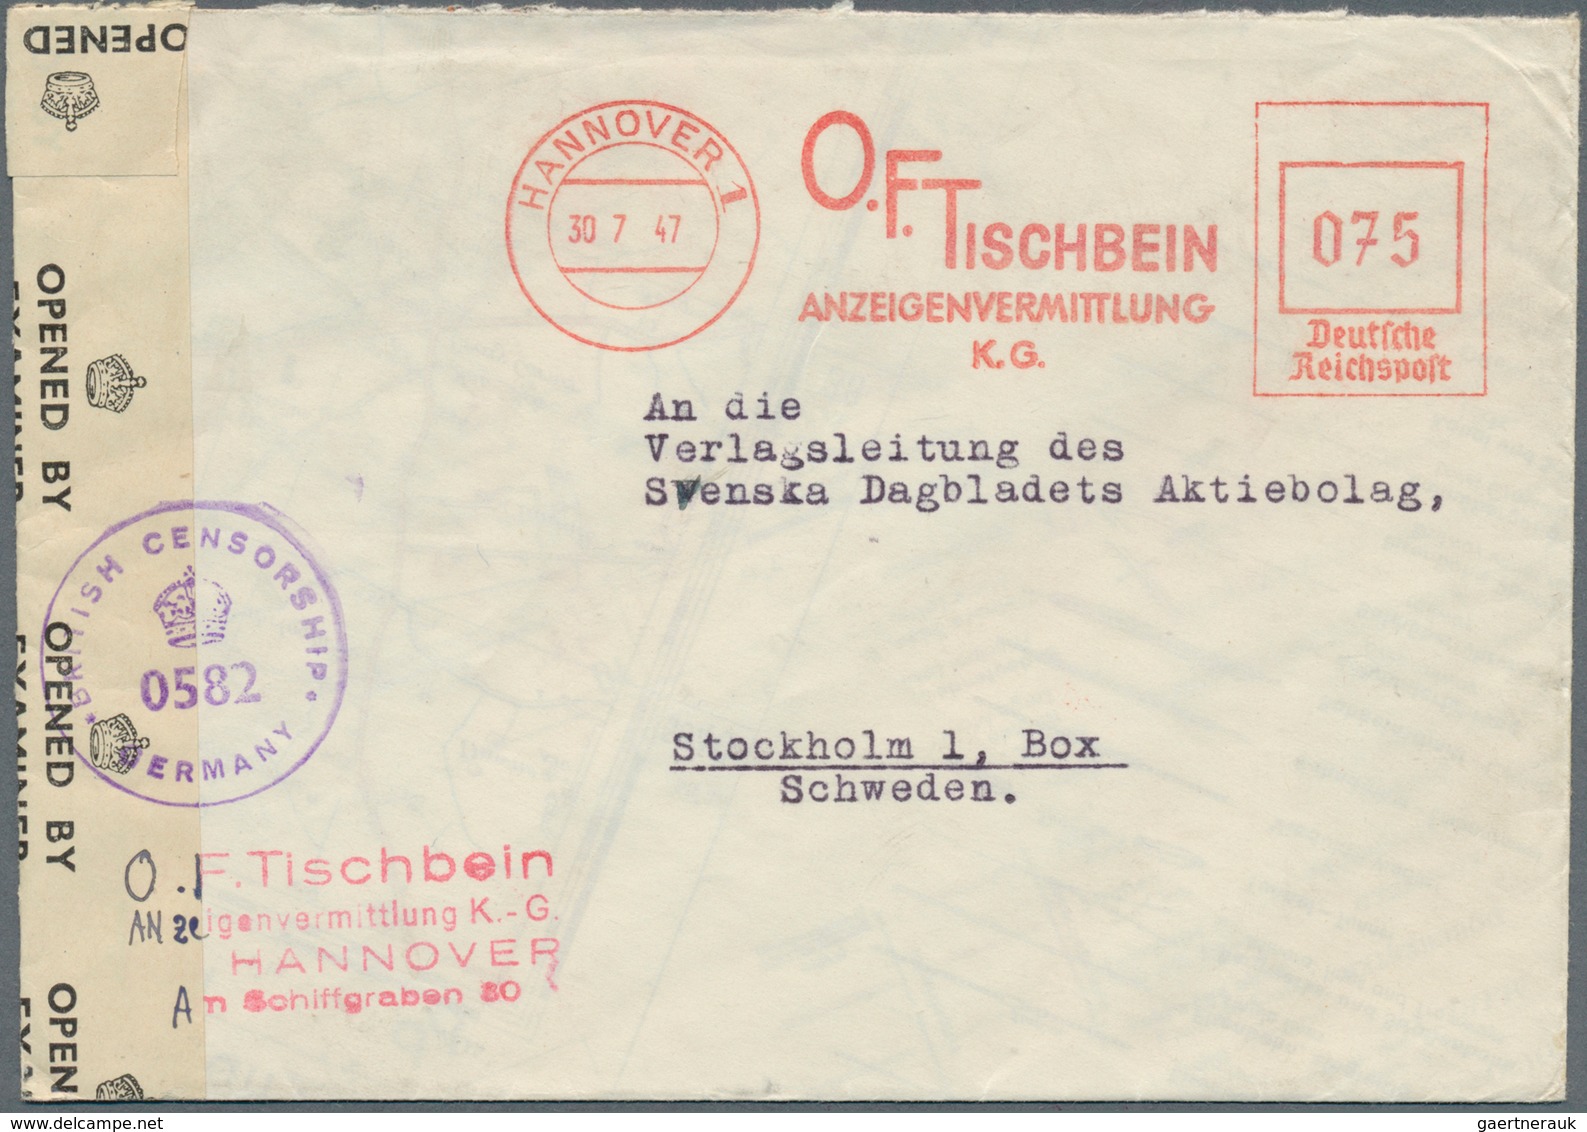 32161 Deutschland nach 1945: 1946/1955, FREISTEMPEL, ca. 450 Belege, dabei viele aptierte Stempel aus dem